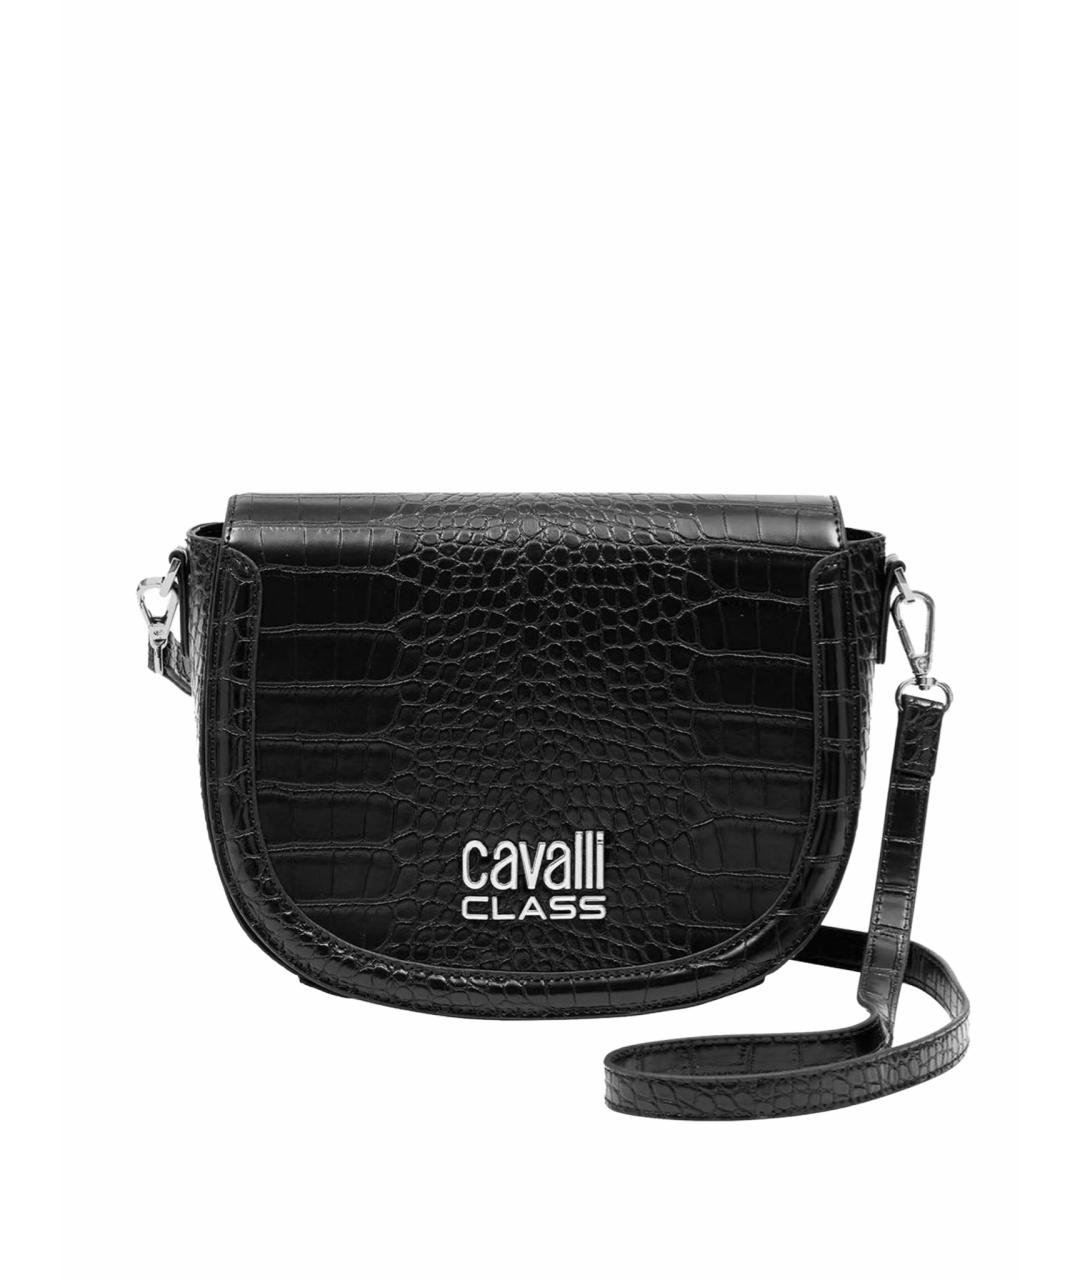 CAVALLI CLASS Черная сумка через плечо из искусственной кожи, фото 1